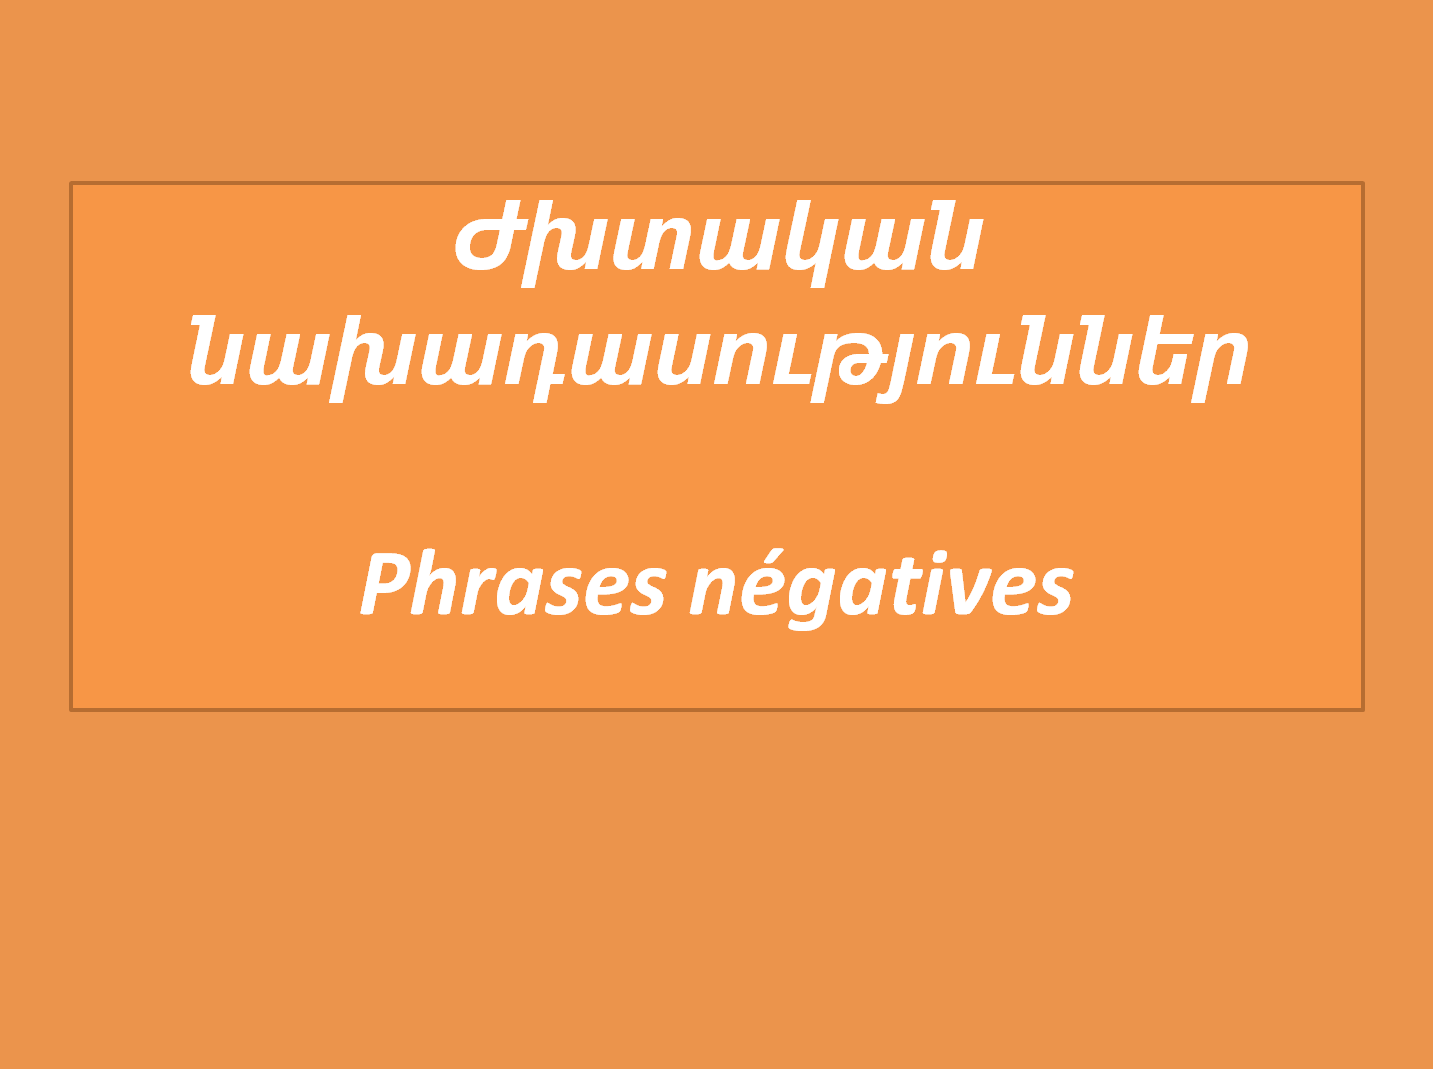 Phrases négatives — Ժխտական նախադասություններ